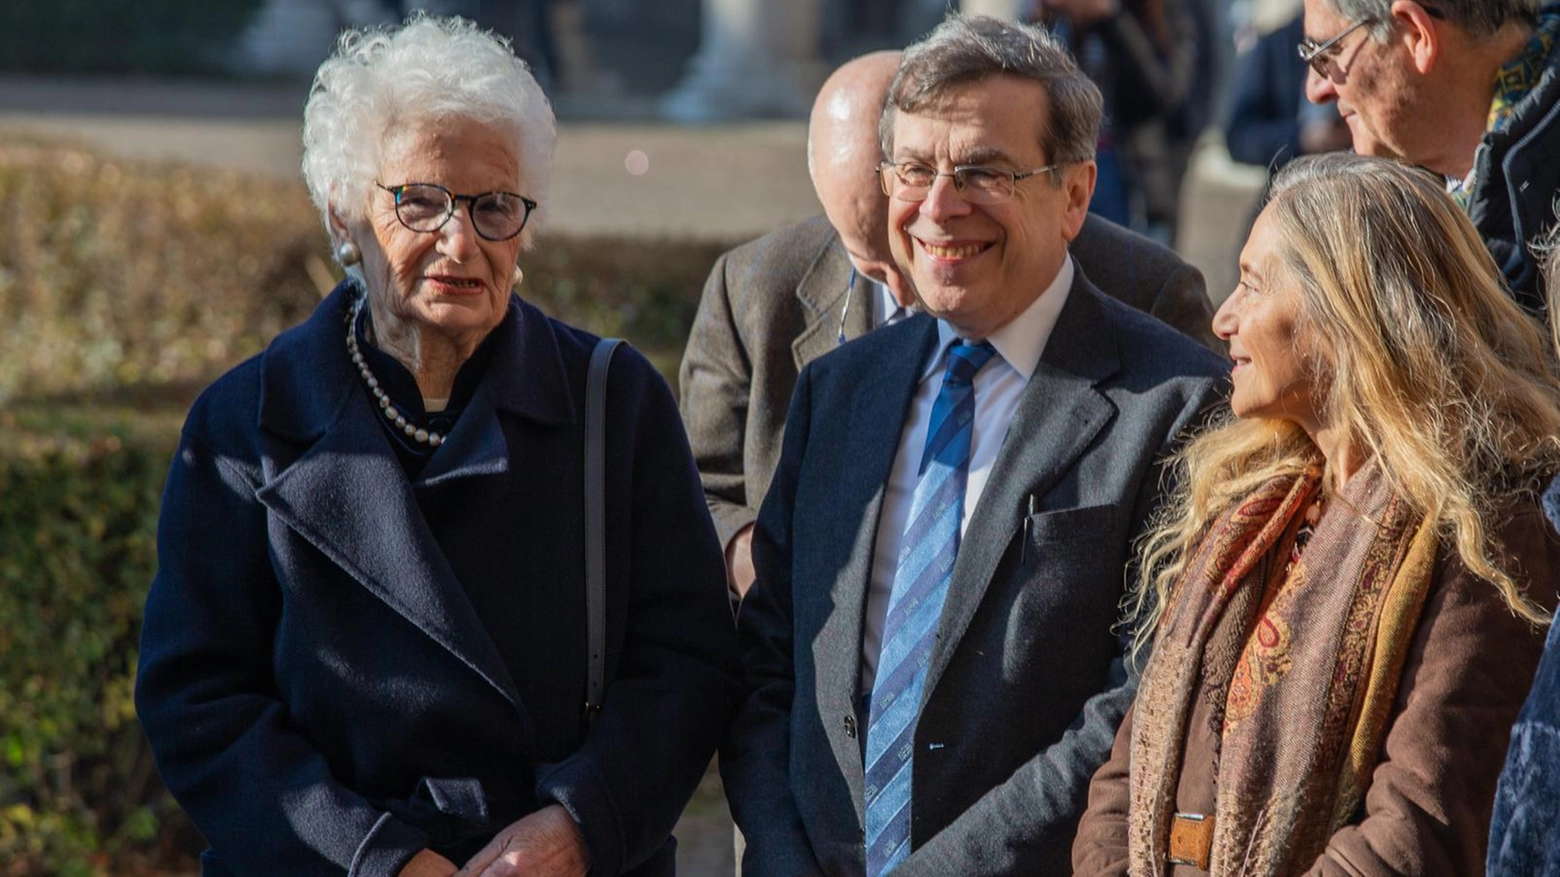 Liliana Segre ed Elio Franzini all'Università Statale (Foto Canella)